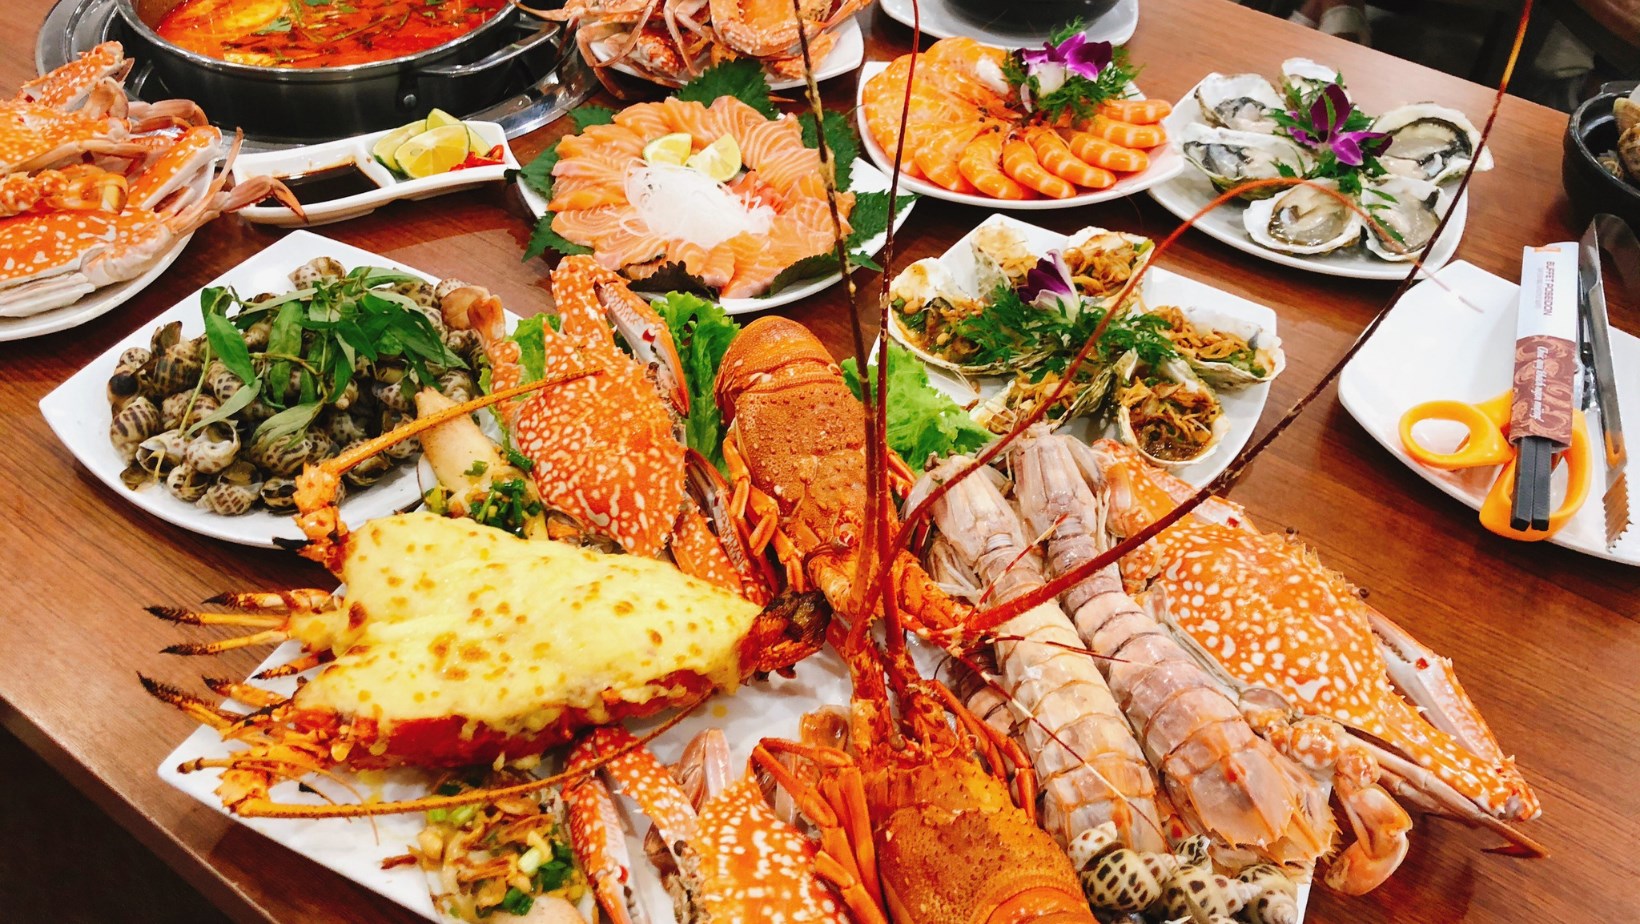 Poseidon - Nhà hàng buffet hải sản Hà Nội nổi tiếng